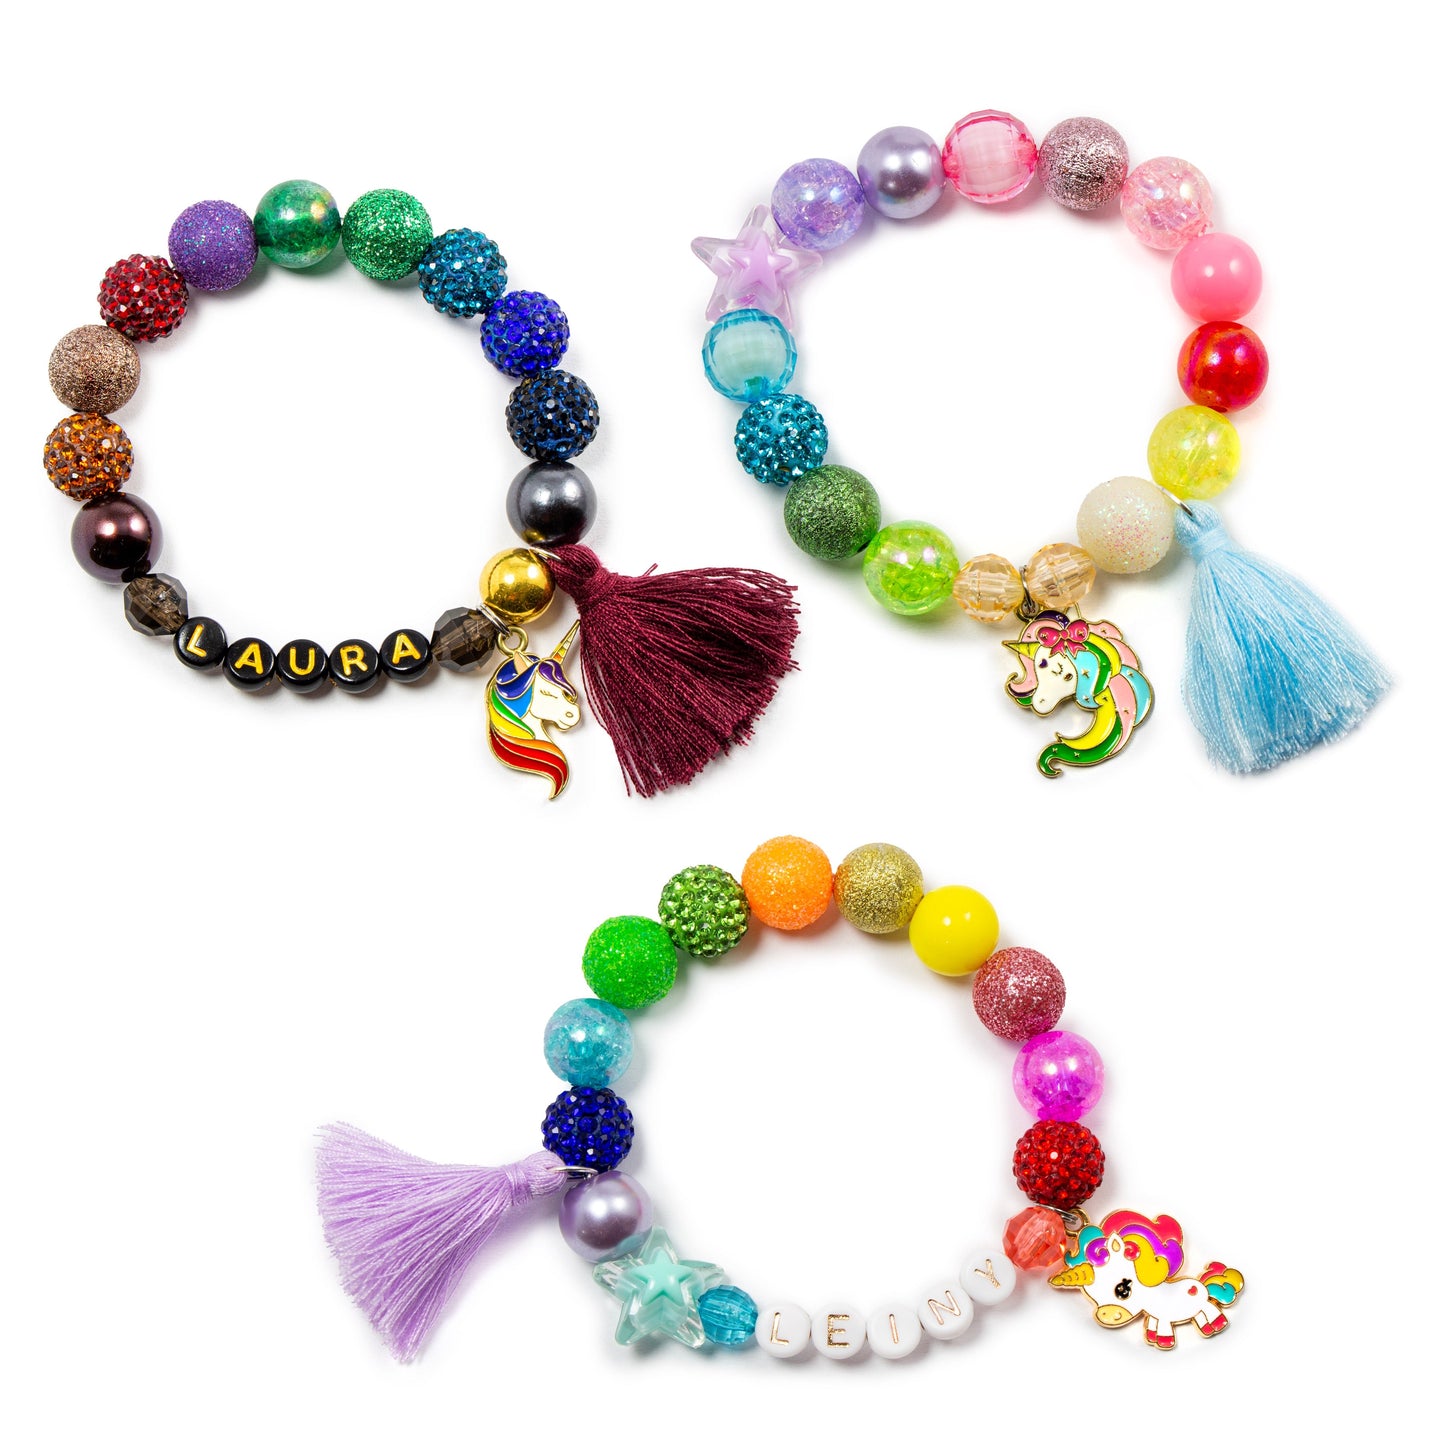 Girls unicorn charm tassel bracelet / Midnight magic / Personalized jewelry stretch